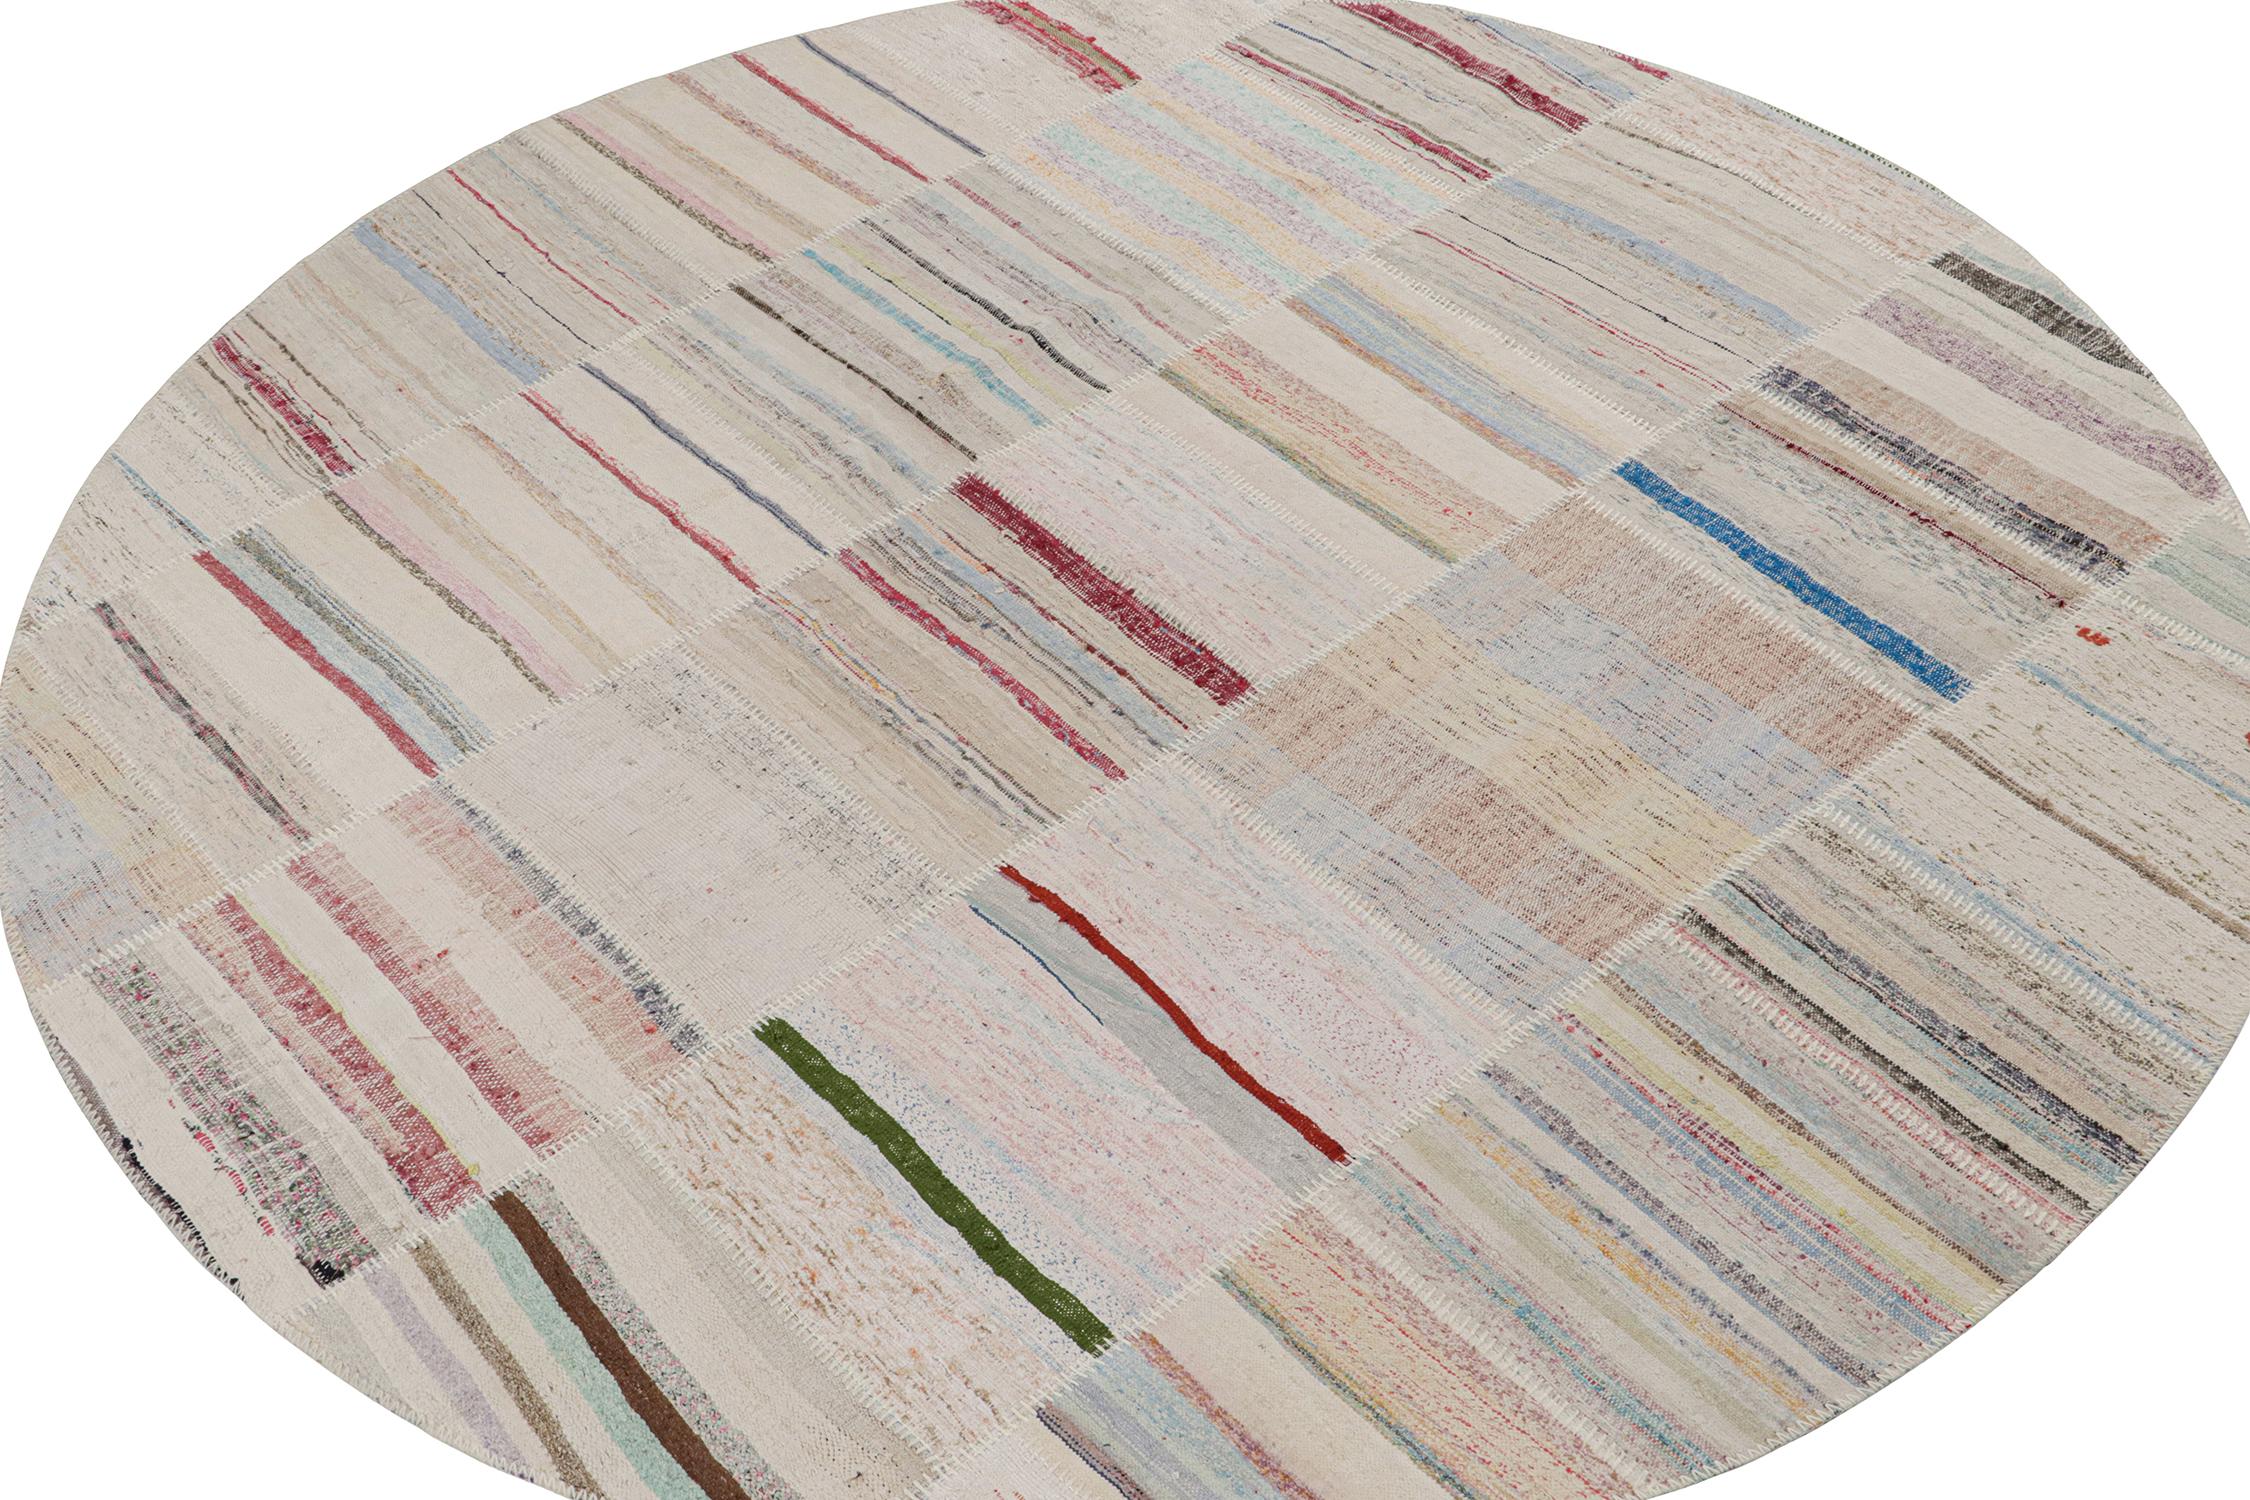 Rug & Kilim präsentiert einen zeitgenössischen kreisförmigen 9'-Teppich aus ihrer innovativen neuen Patchwork-Kelim-Kollektion. 

Über das Design: 

Bei dieser Flachgewebetechnik werden Vintage-Garne in polychromen Streifen und Schlieren